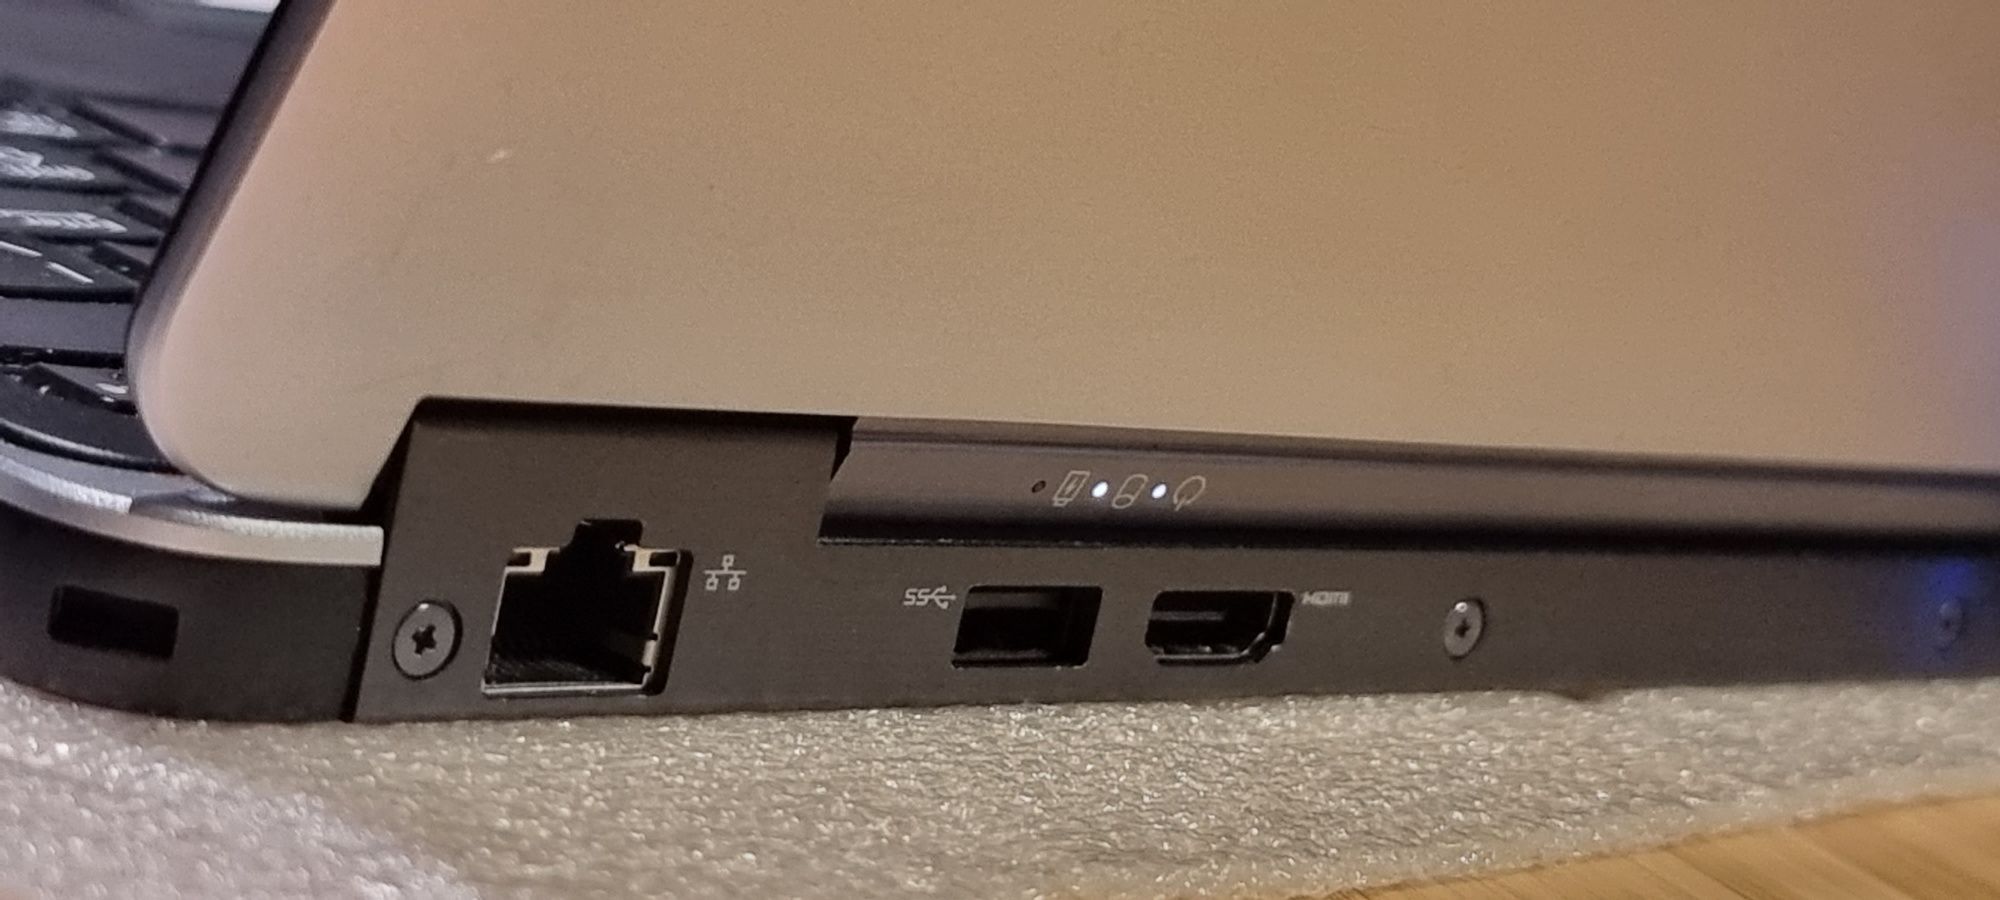 Ultrabook Dell i7-4600